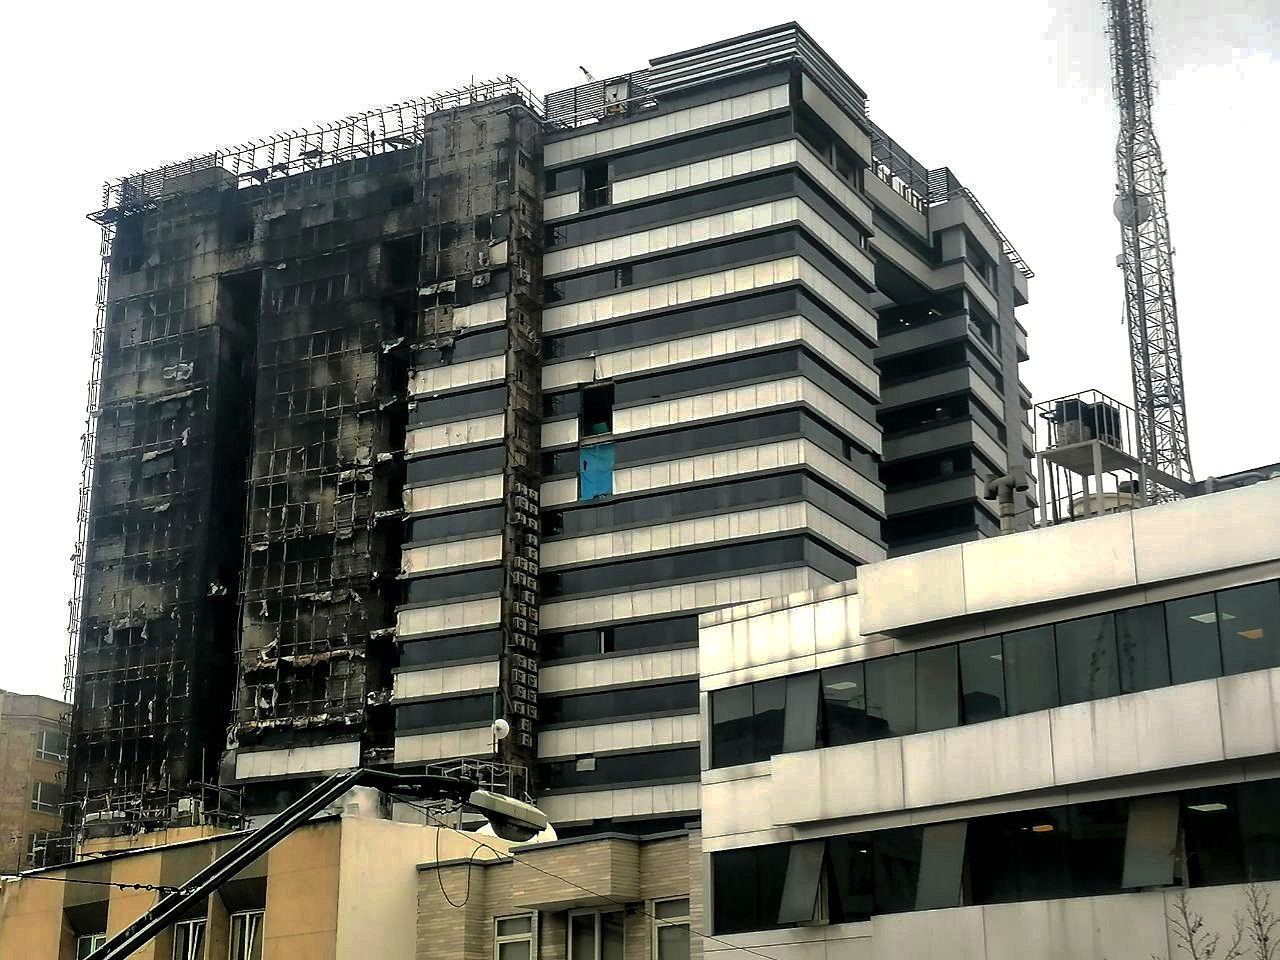 ساختمان در آتش سوخته بیمارستان گاندی ۲ روز بعد از حادثه/ عکس